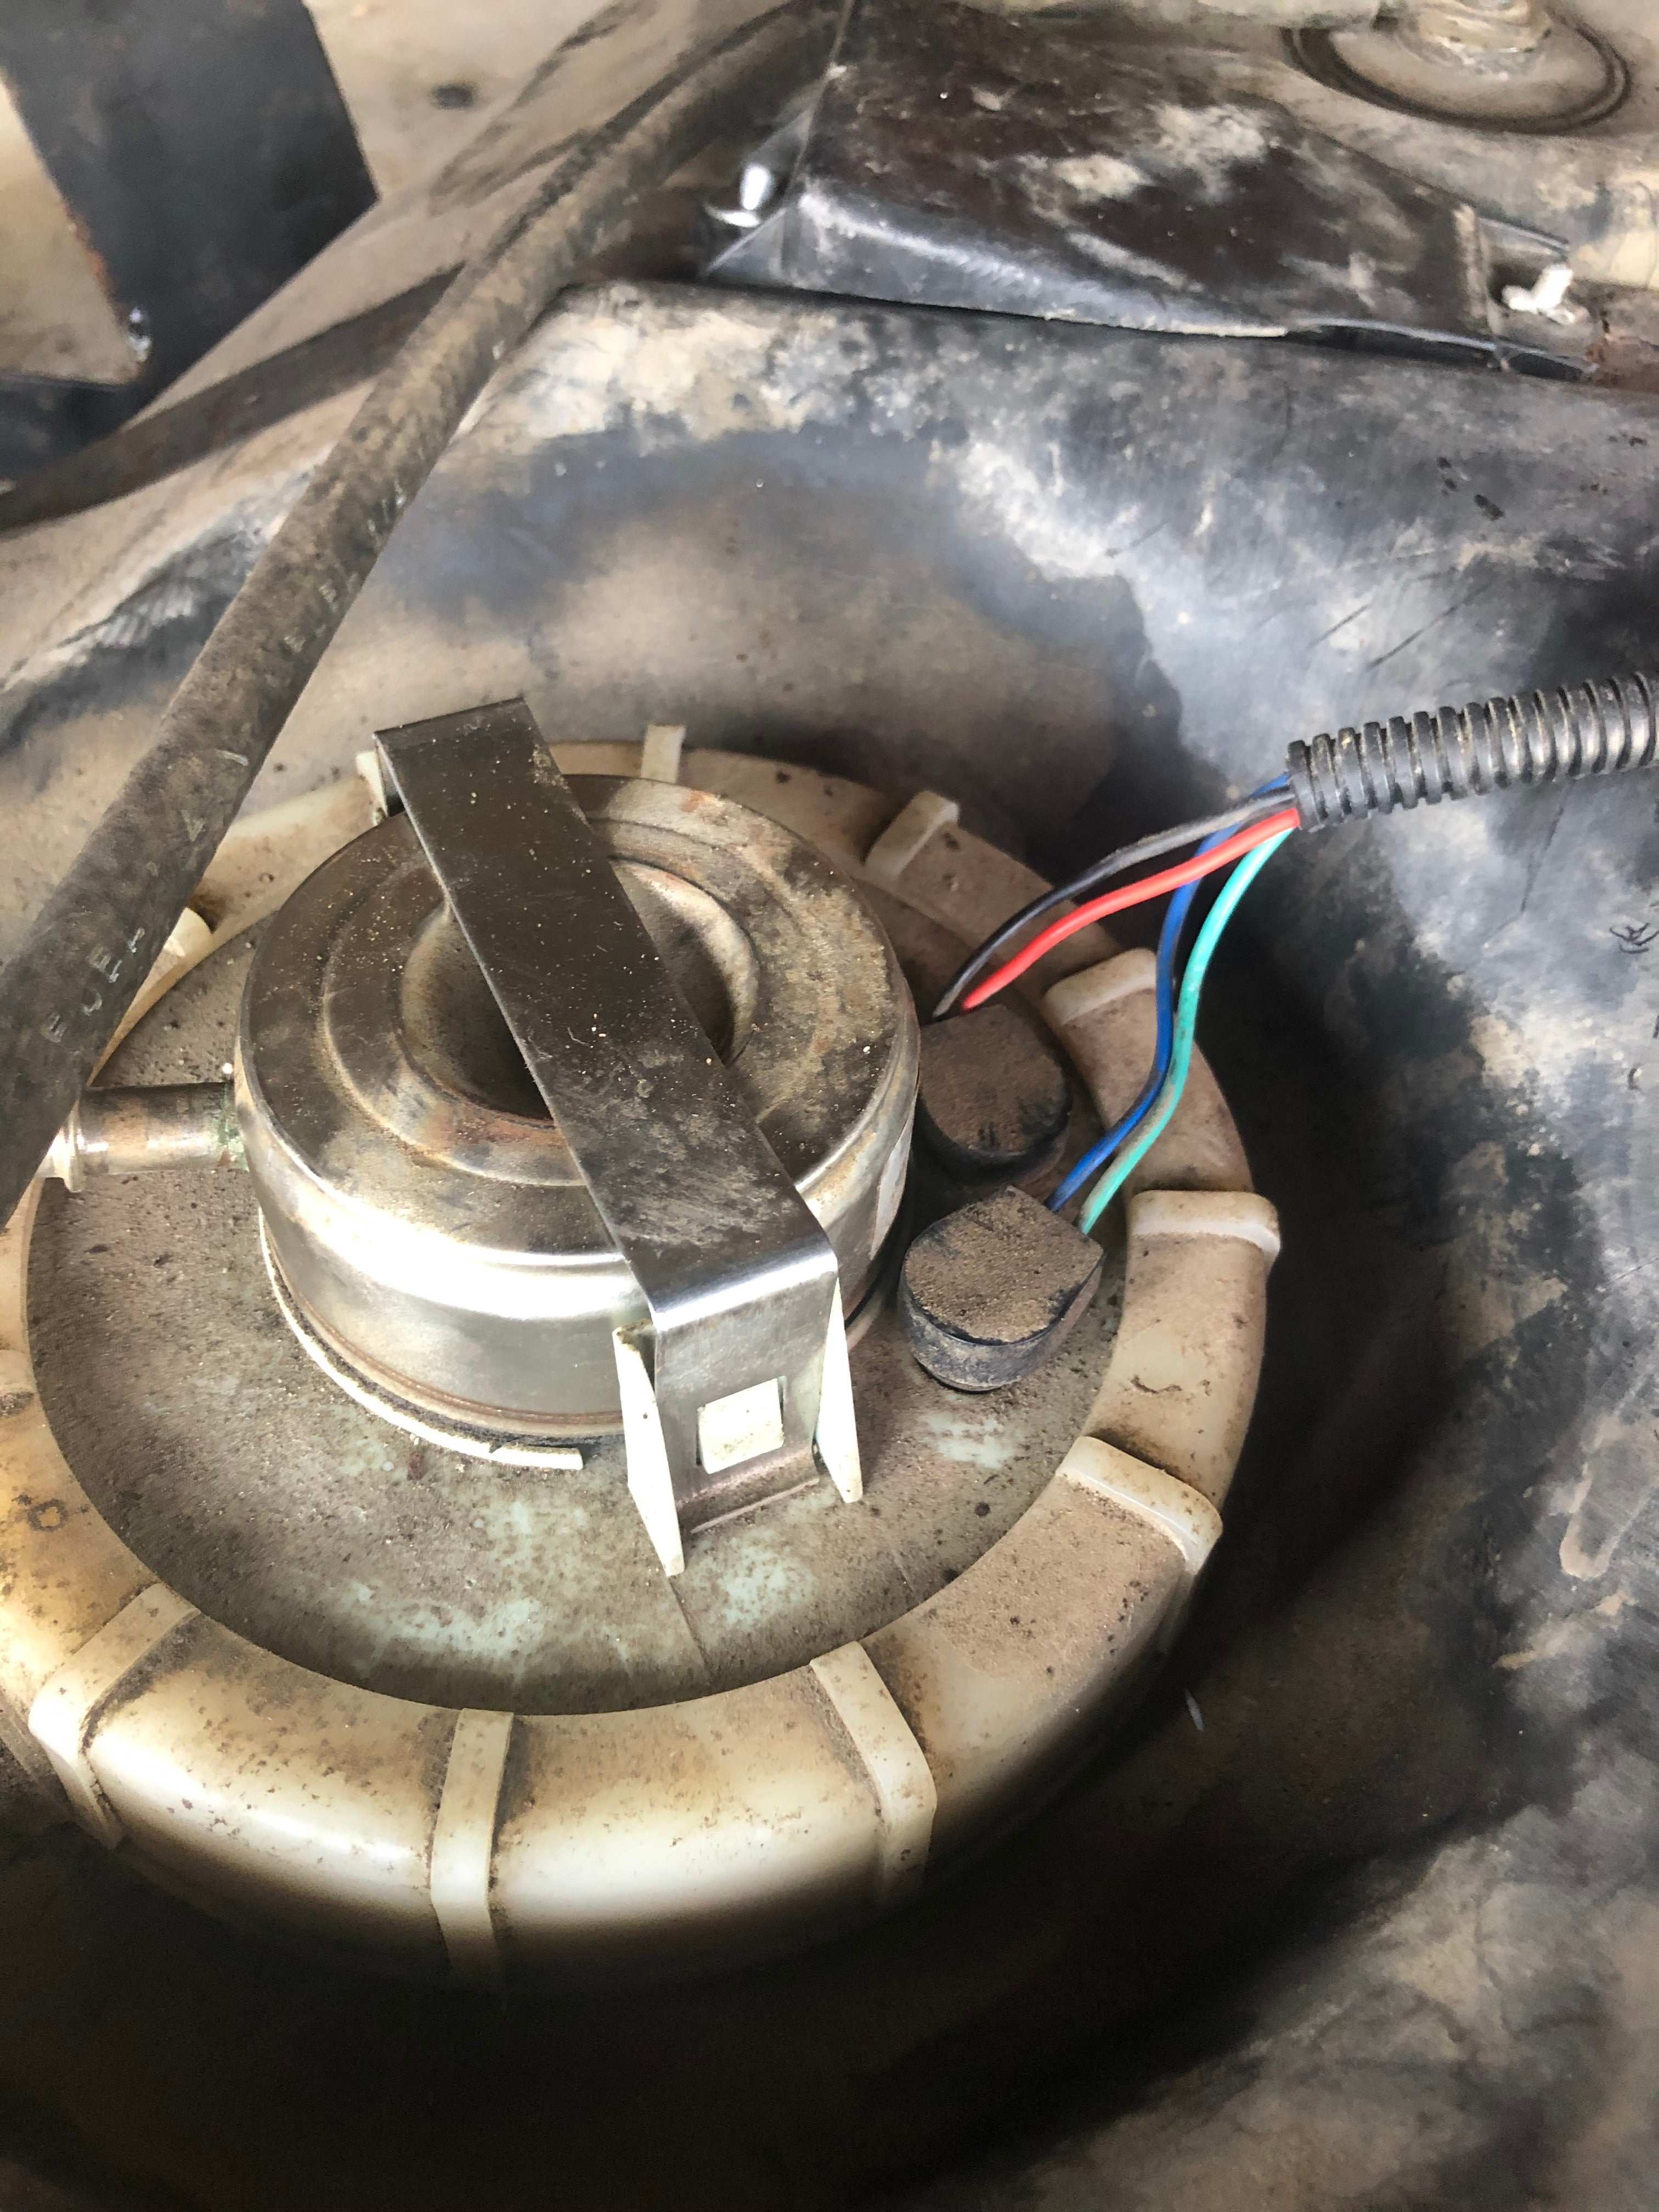 98 TJ fuel pump wiring connector | Jeep Wrangler Forum